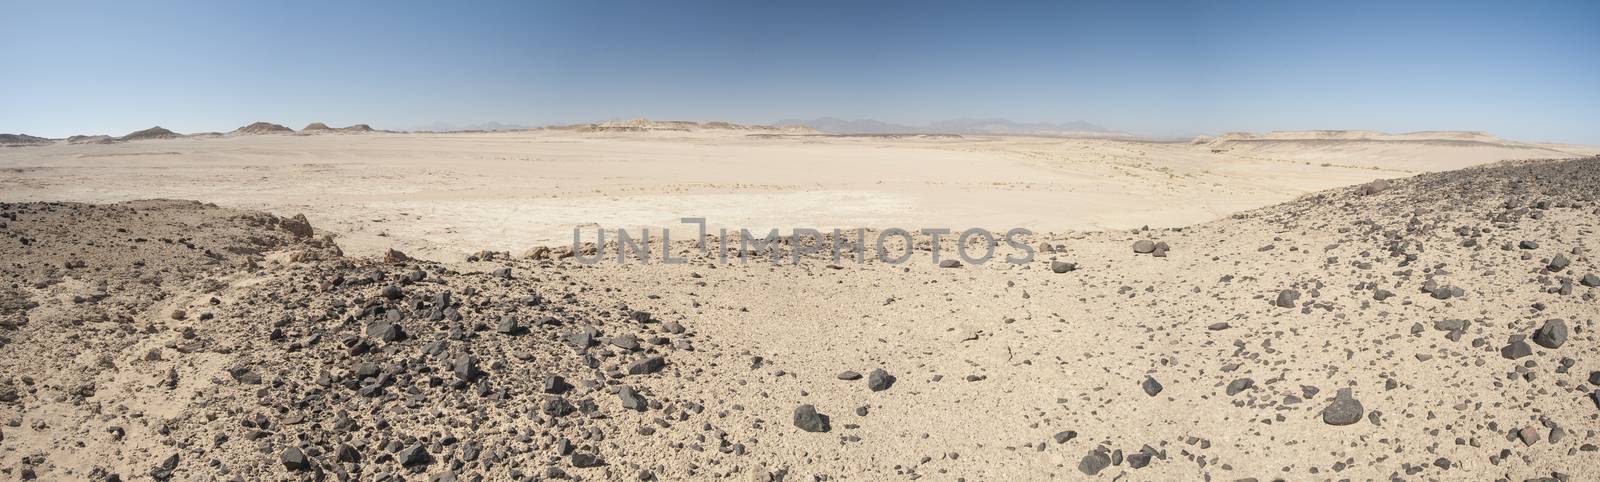 Rocky mountain slope in a desert by paulvinten